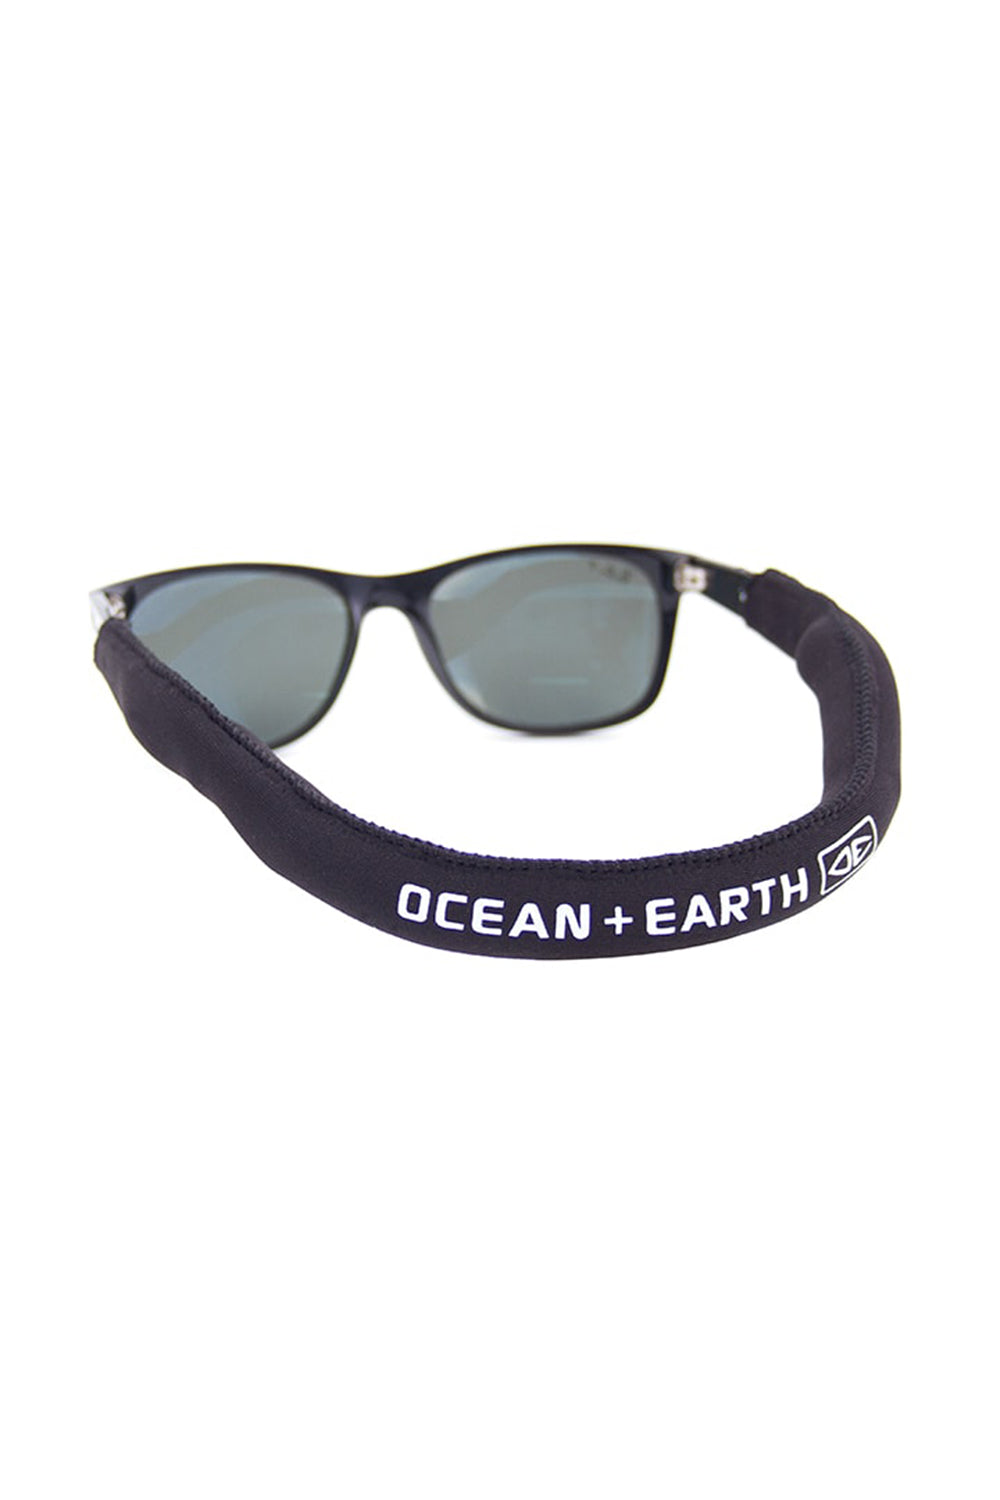 Ocean & Earth Mens Neoprene Floating Sunny Strap